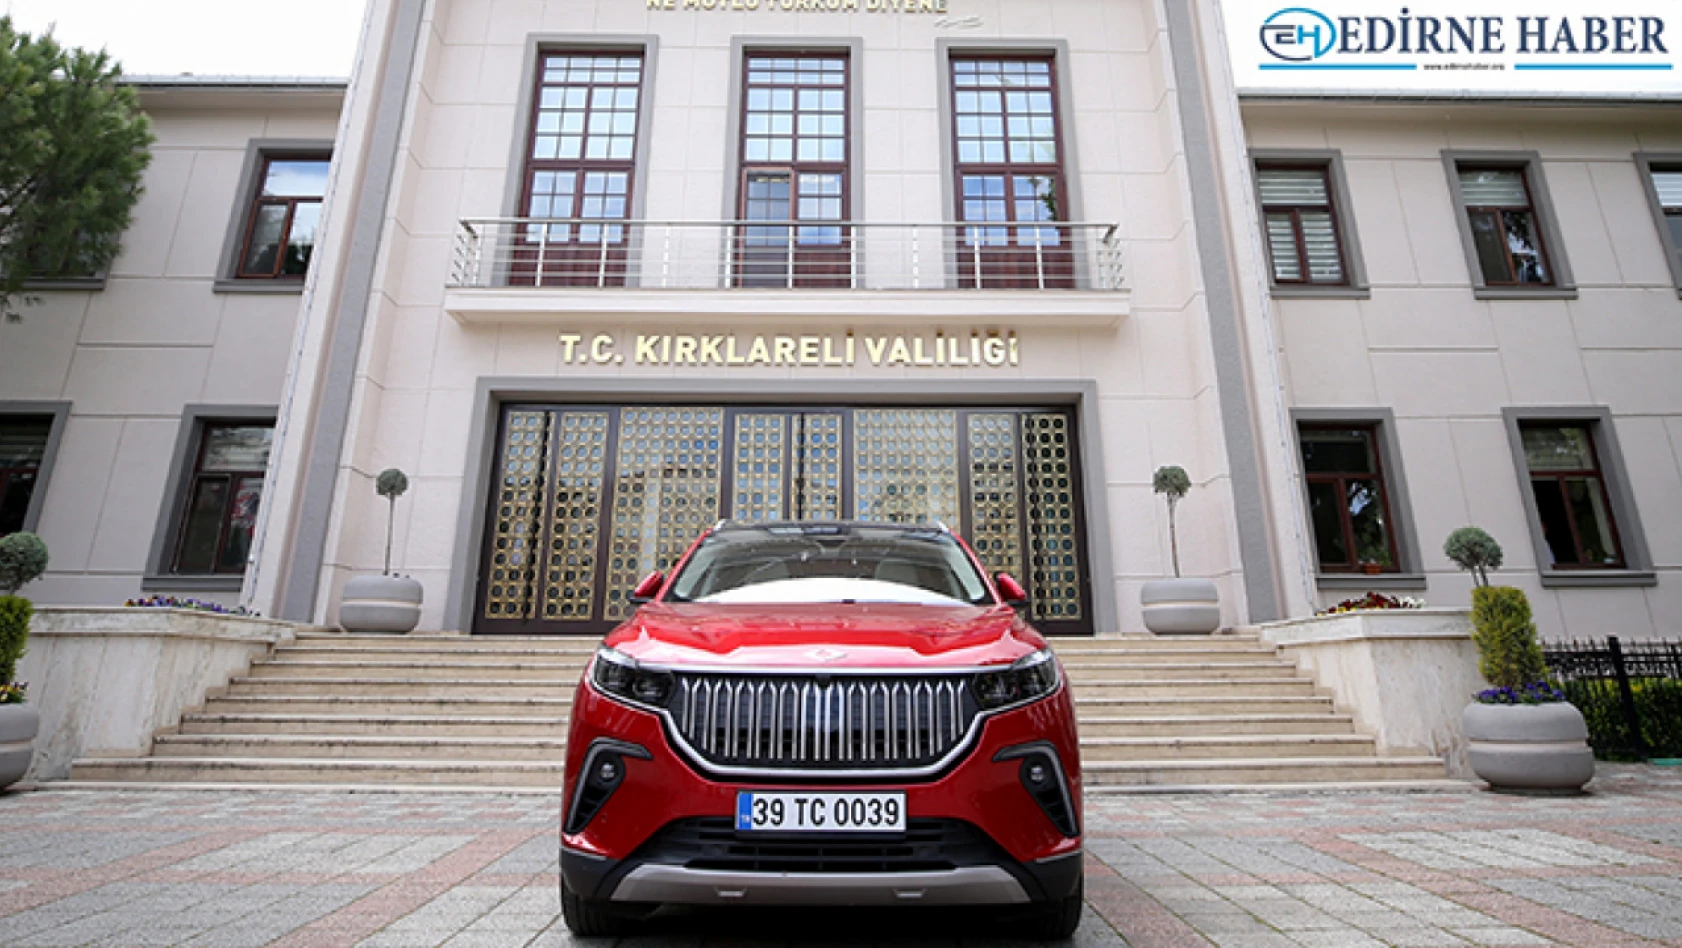 Türkiye'nin yerli otomobili Togg, Kırklareli'nde tanıtıldı